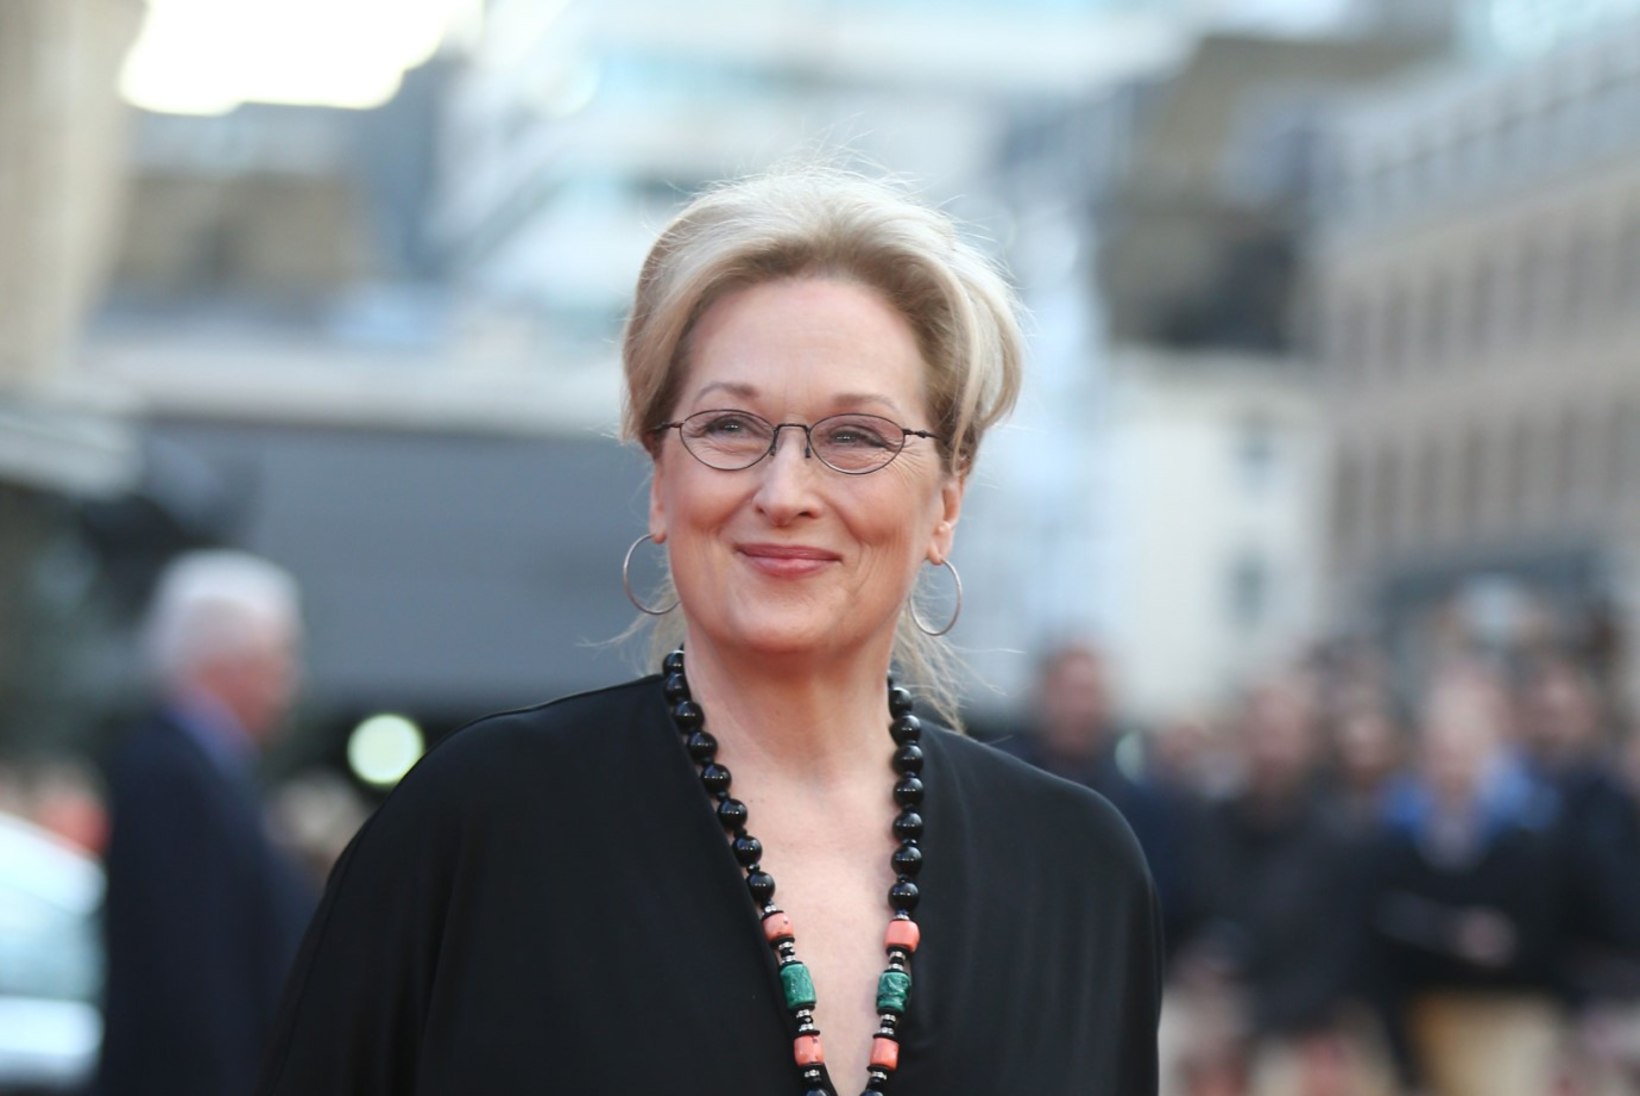 Meryl Streep kartis pärast 40 aastaseks saamist, et iga järgnev film võib jääda tema viimaseks